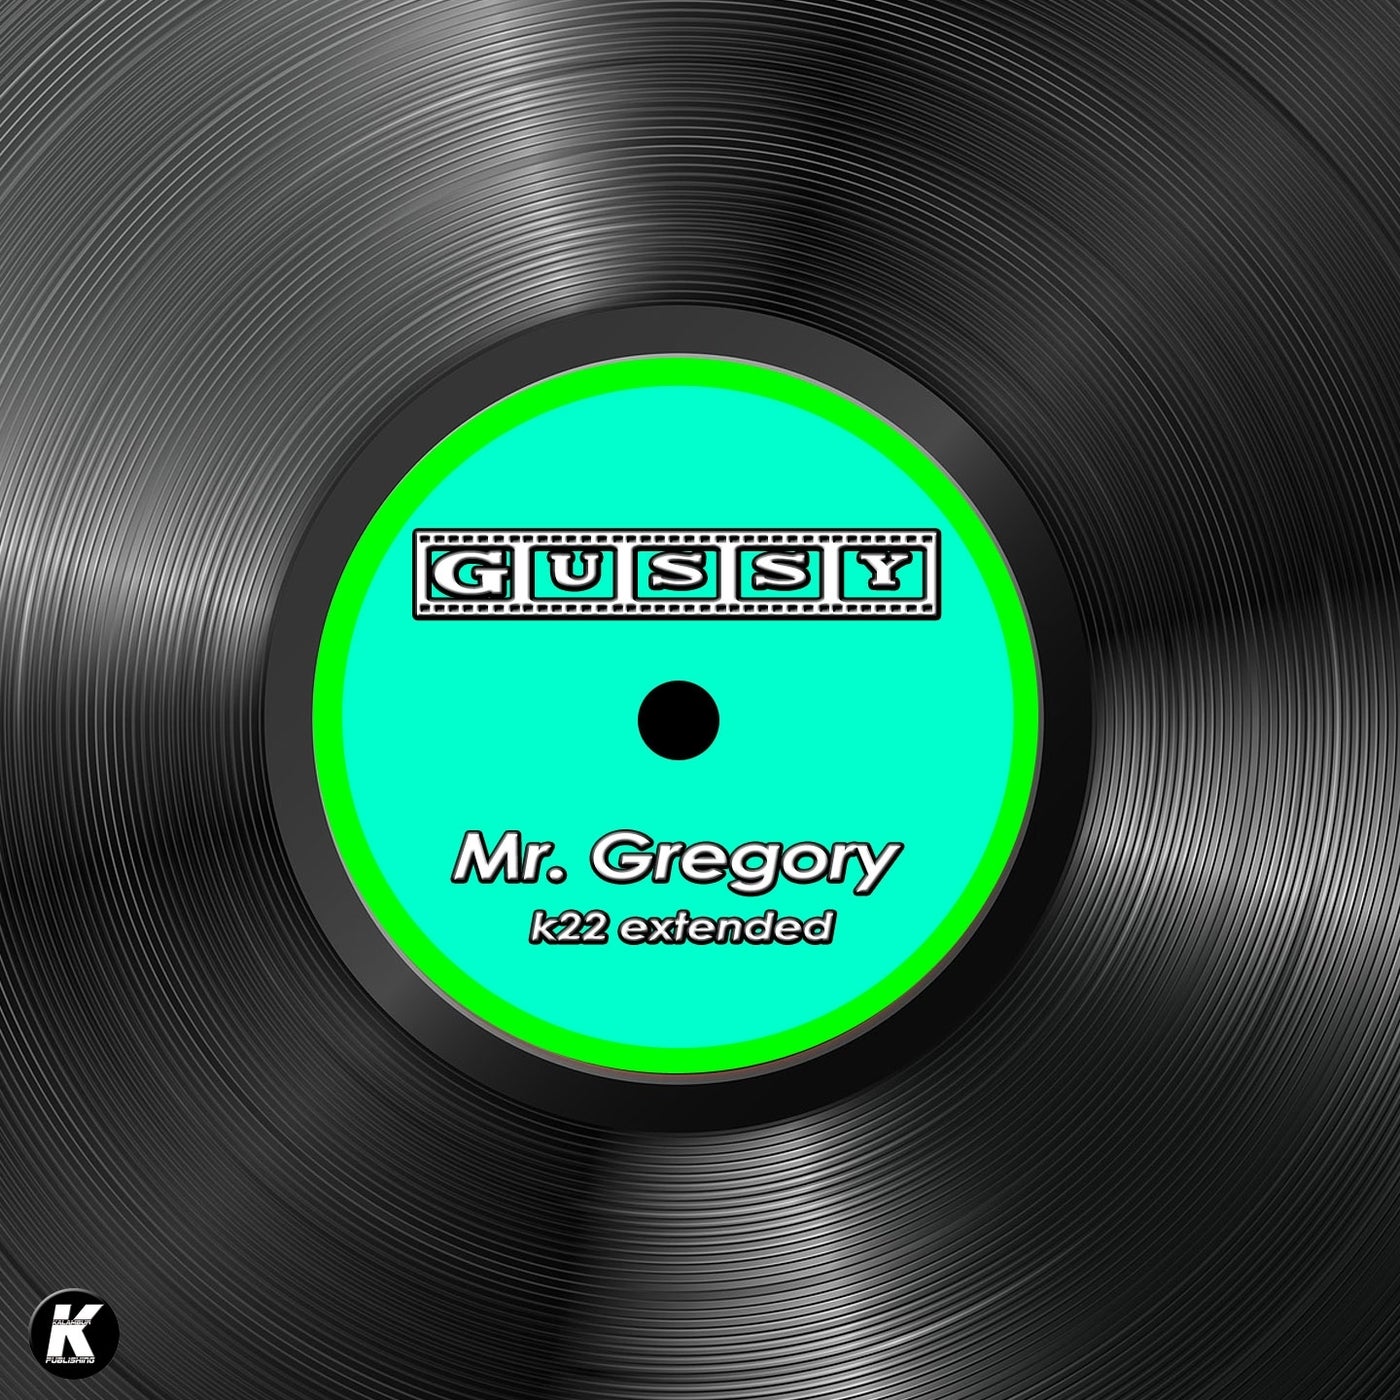 MR. GREGORY (K22 extended)